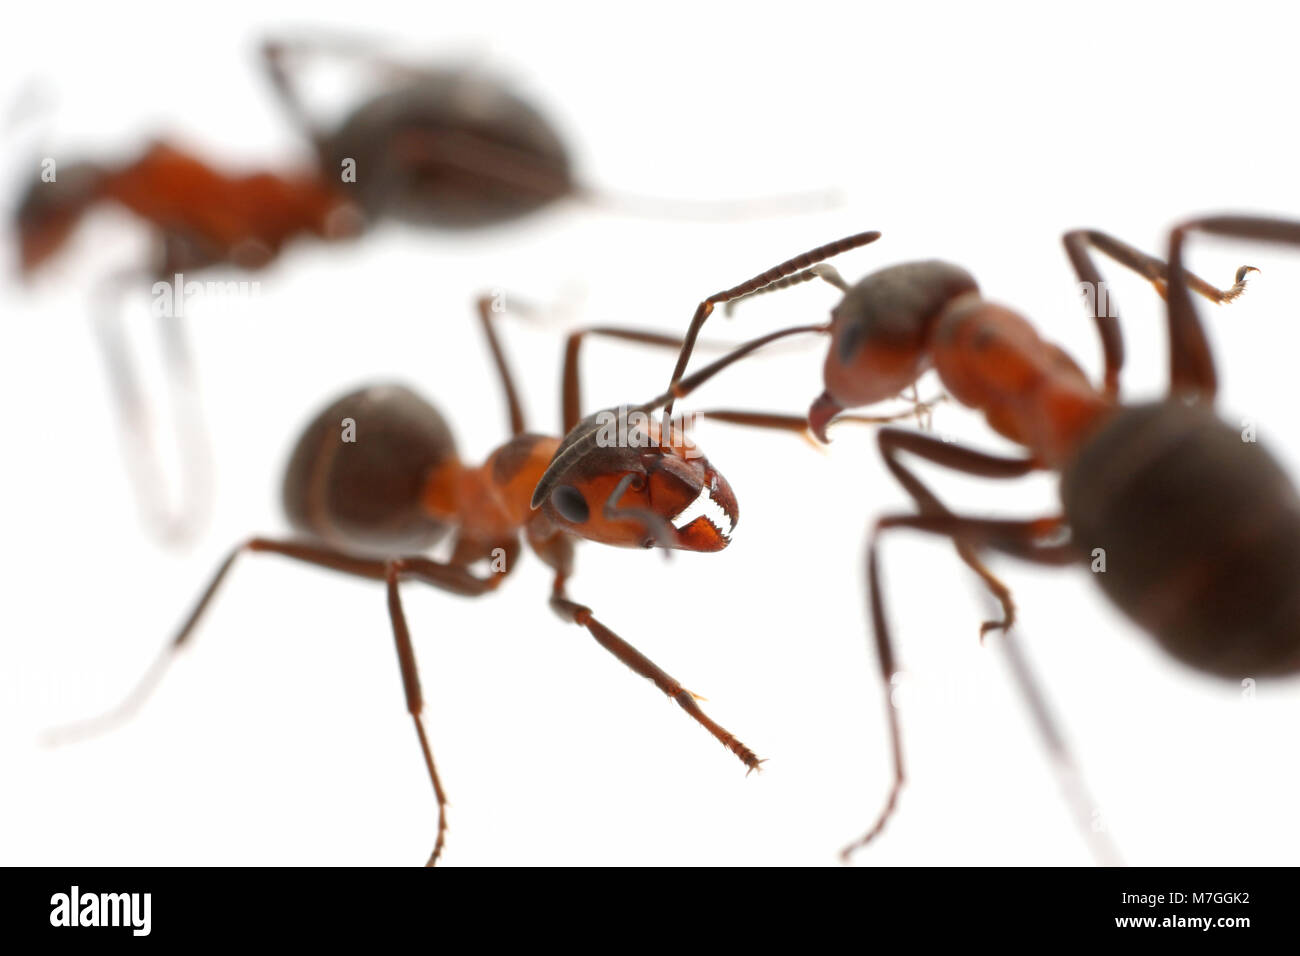 Las hormigas de madera Formica-rusa sobre un fondo blanco. Las hormigas son capaces de pulverizar ácido fórmico en los depredadores que atacan sus nidos. Dorset, Reino Unido. Foto de stock